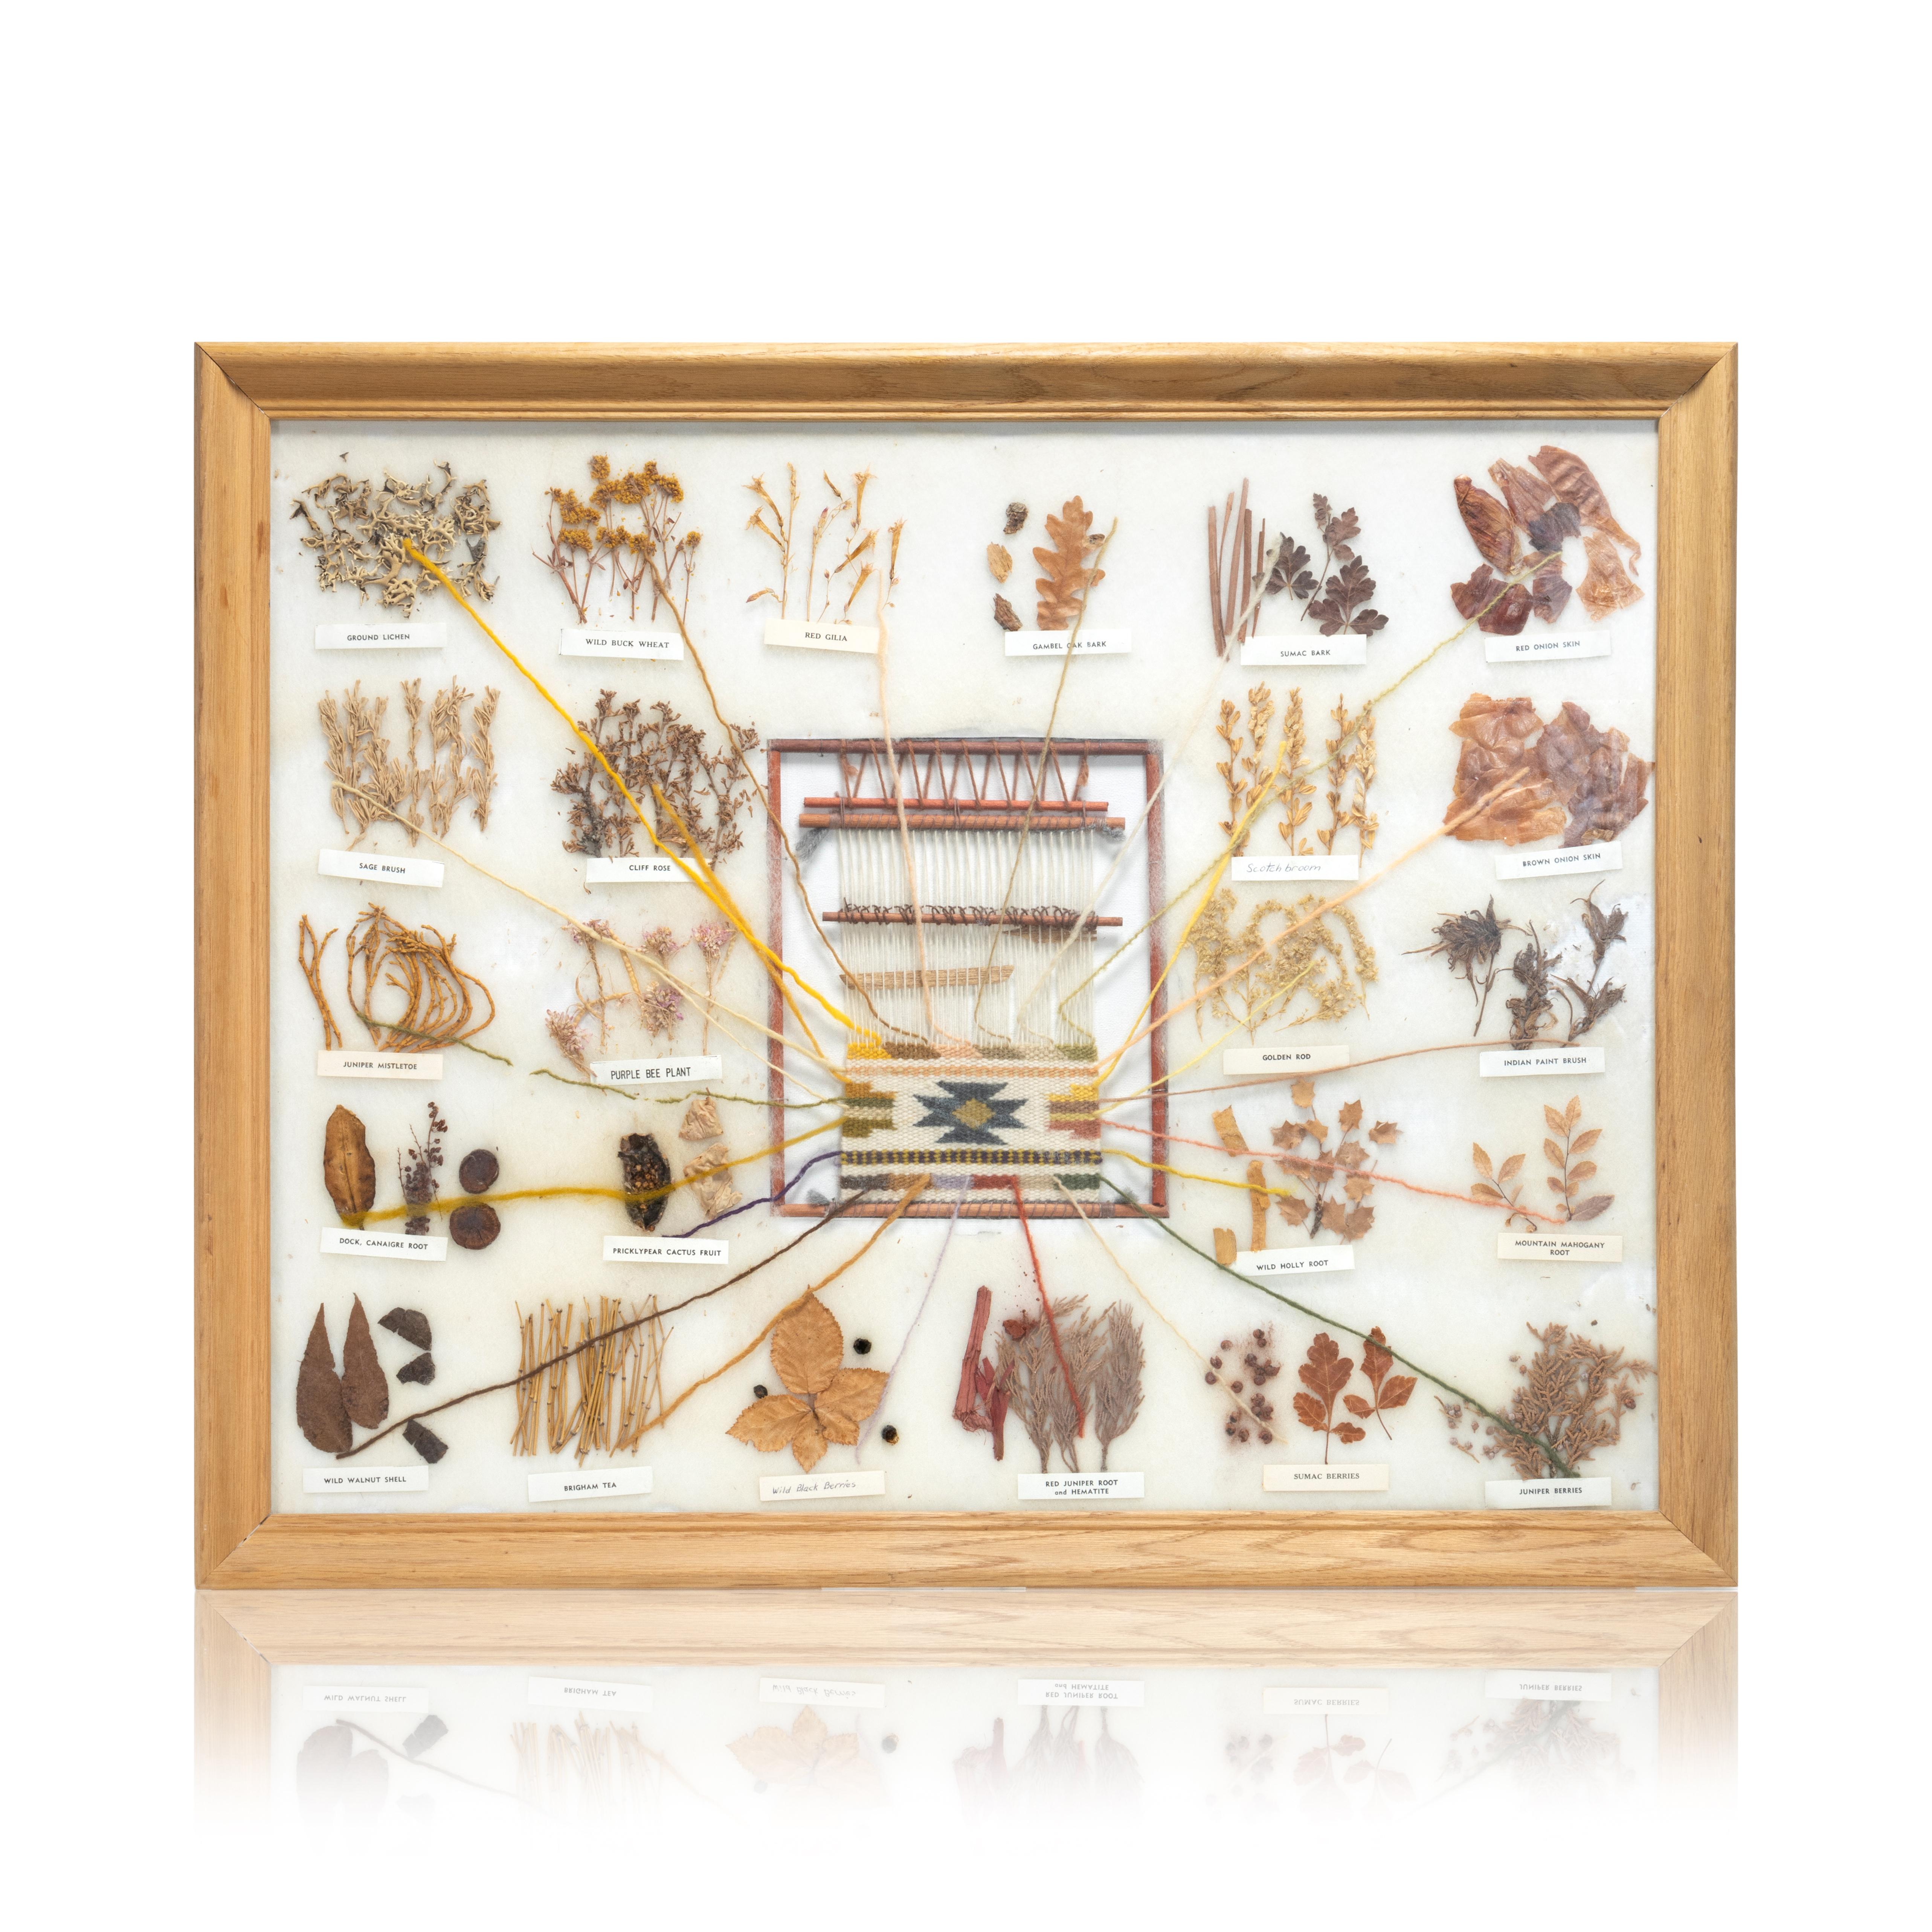 Collection encadrée de teintures amérindiennes utilisées pour la confection de tissages. Collectional authentique avec chaque colorant étiqueté (diverses plantes, abeilles, broussailles, écorces, légumes). Les tisserands teignent la laine pour créer